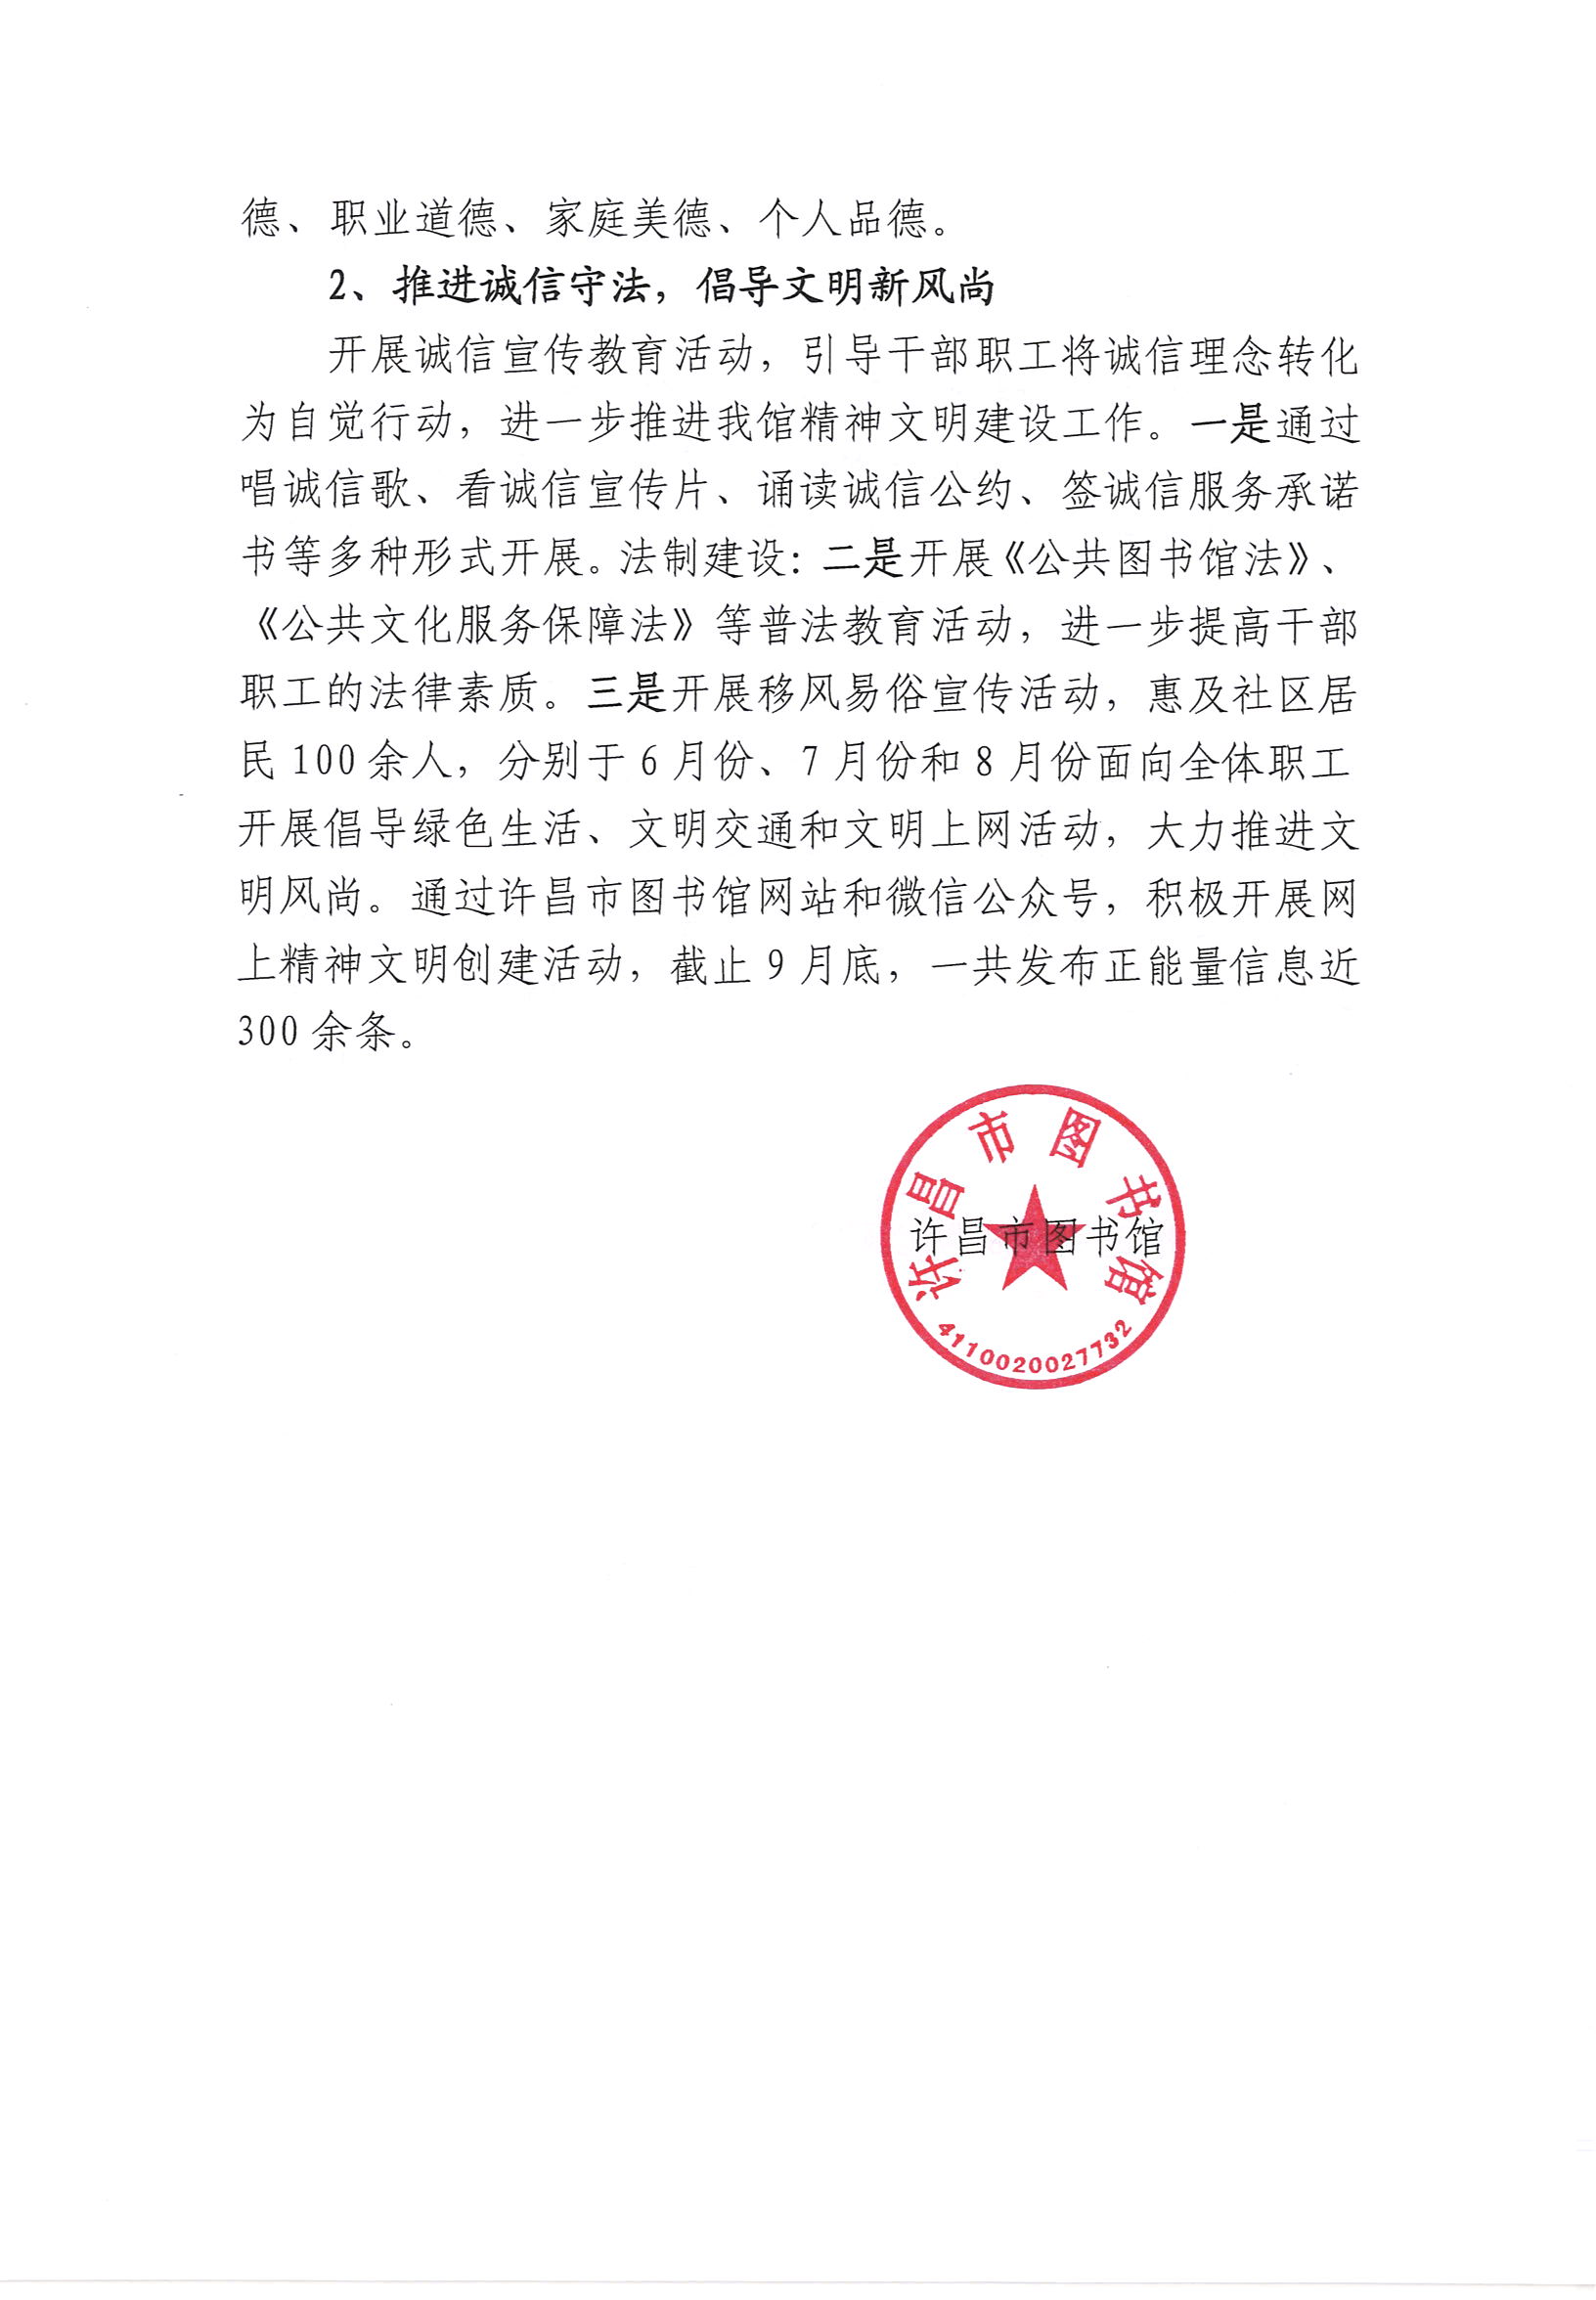 许昌市图书馆2019年度公共文化服务开展情况年报_部分6.jpg